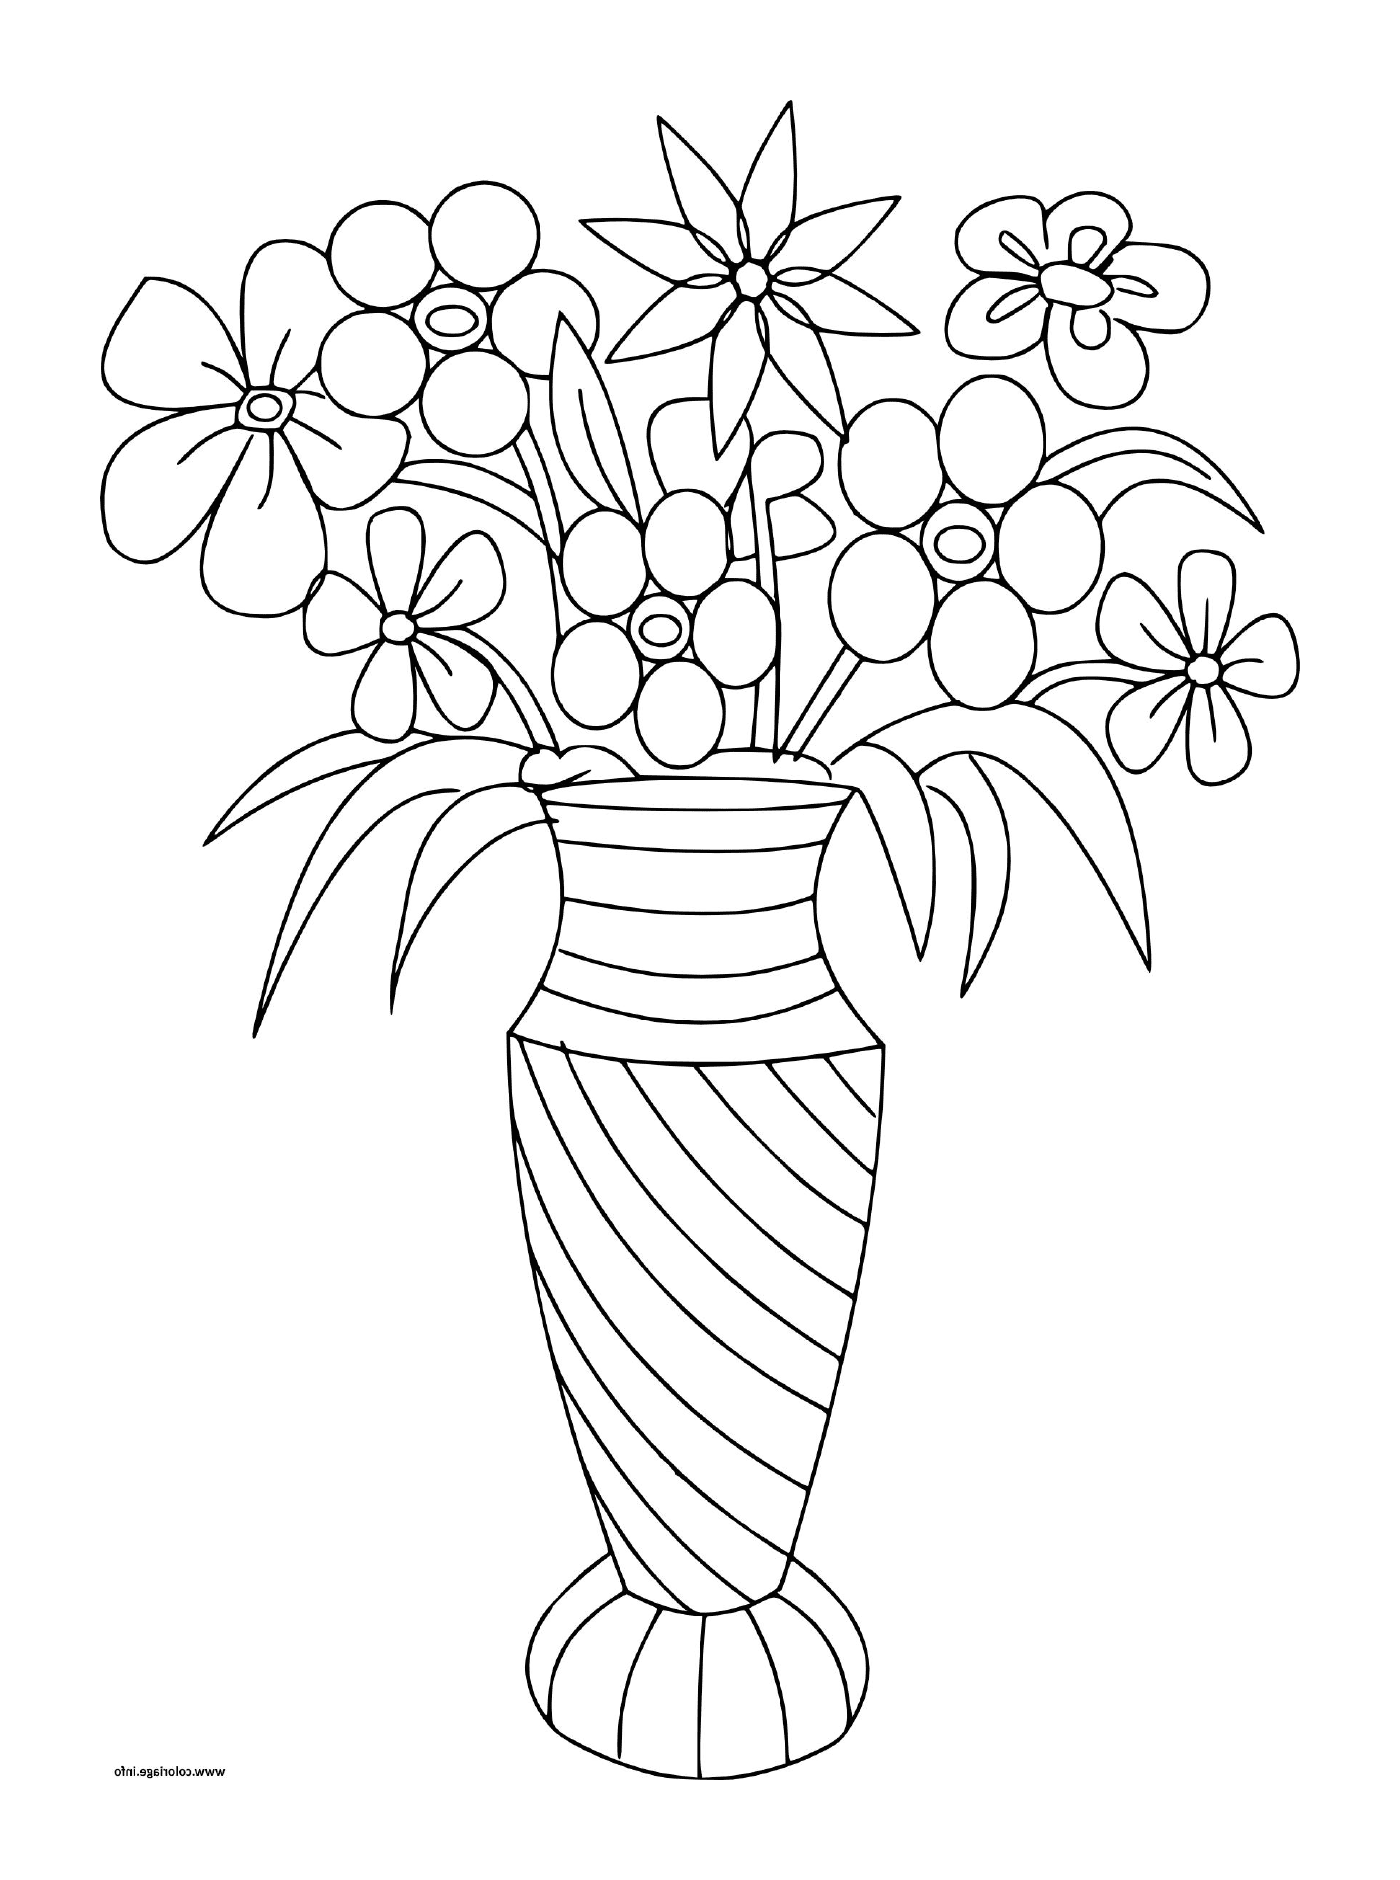   Des bouquets de fleurs variées dans un vase 